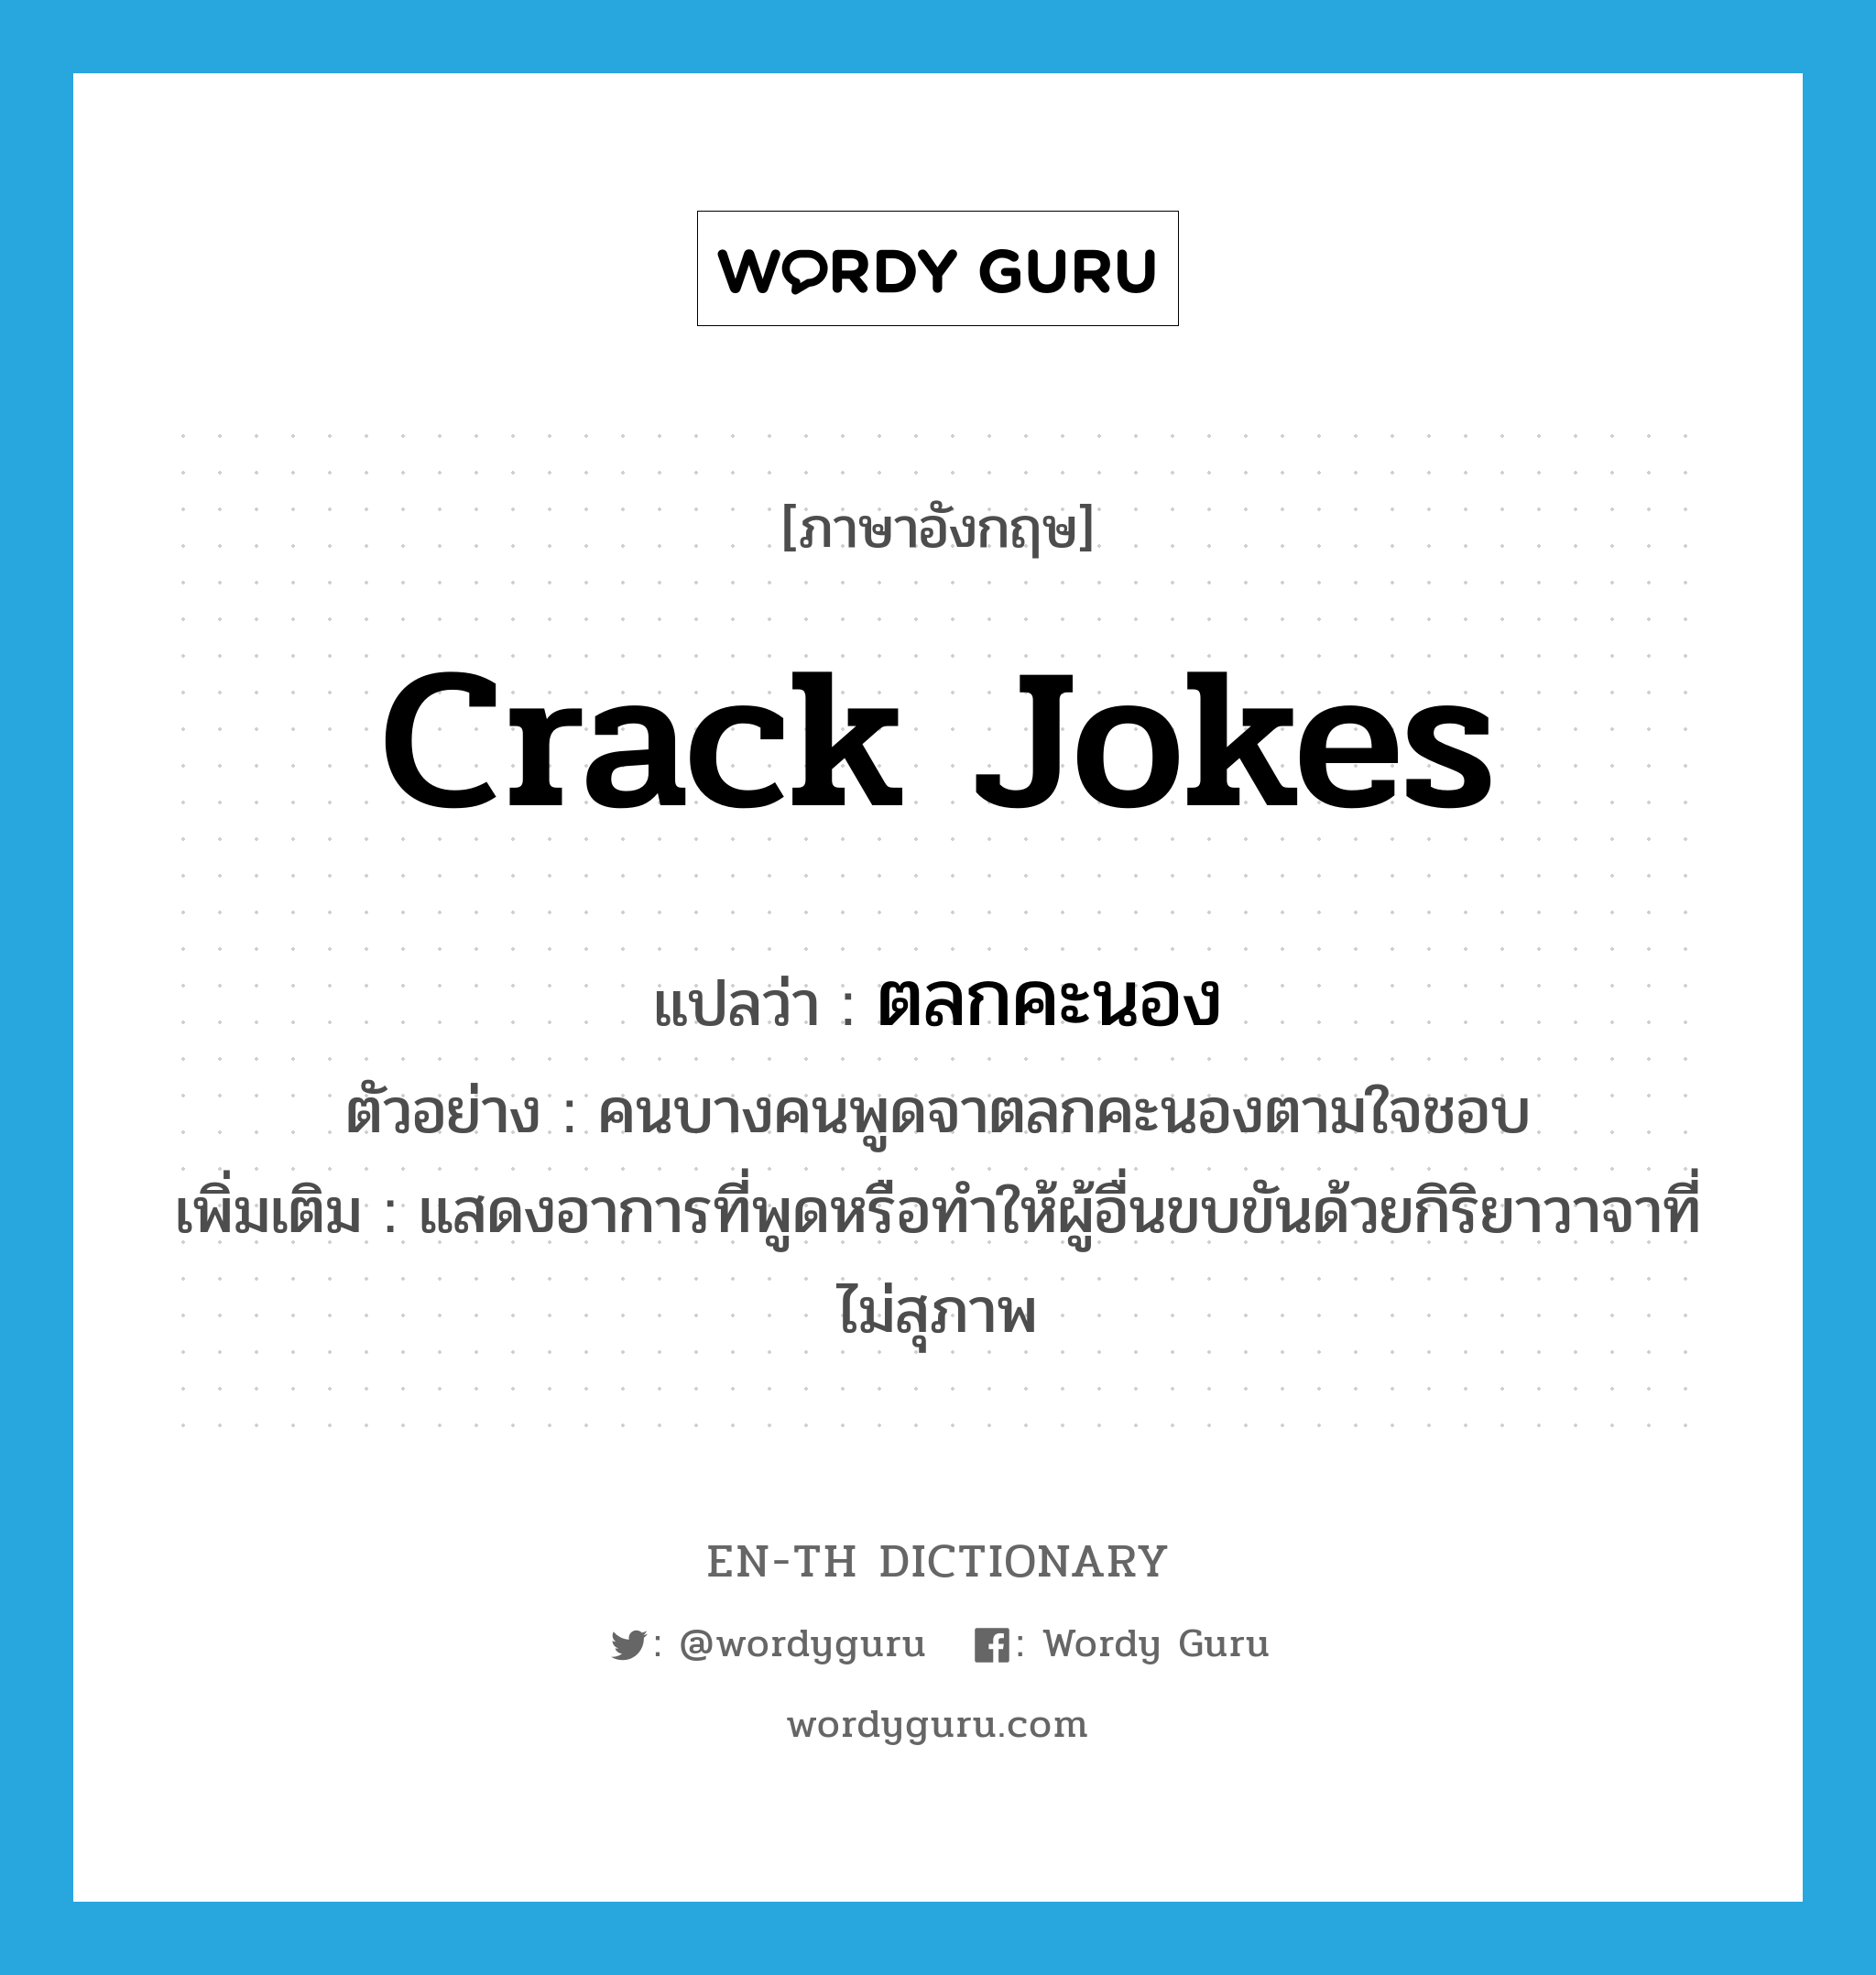 ตลกคะนอง ภาษาอังกฤษ?, คำศัพท์ภาษาอังกฤษ ตลกคะนอง แปลว่า crack jokes ประเภท ADV ตัวอย่าง คนบางคนพูดจาตลกคะนองตามใจชอบ เพิ่มเติม แสดงอาการที่พูดหรือทำให้ผู้อื่นขบขันด้วยกิริยาวาจาที่ไม่สุภาพ หมวด ADV